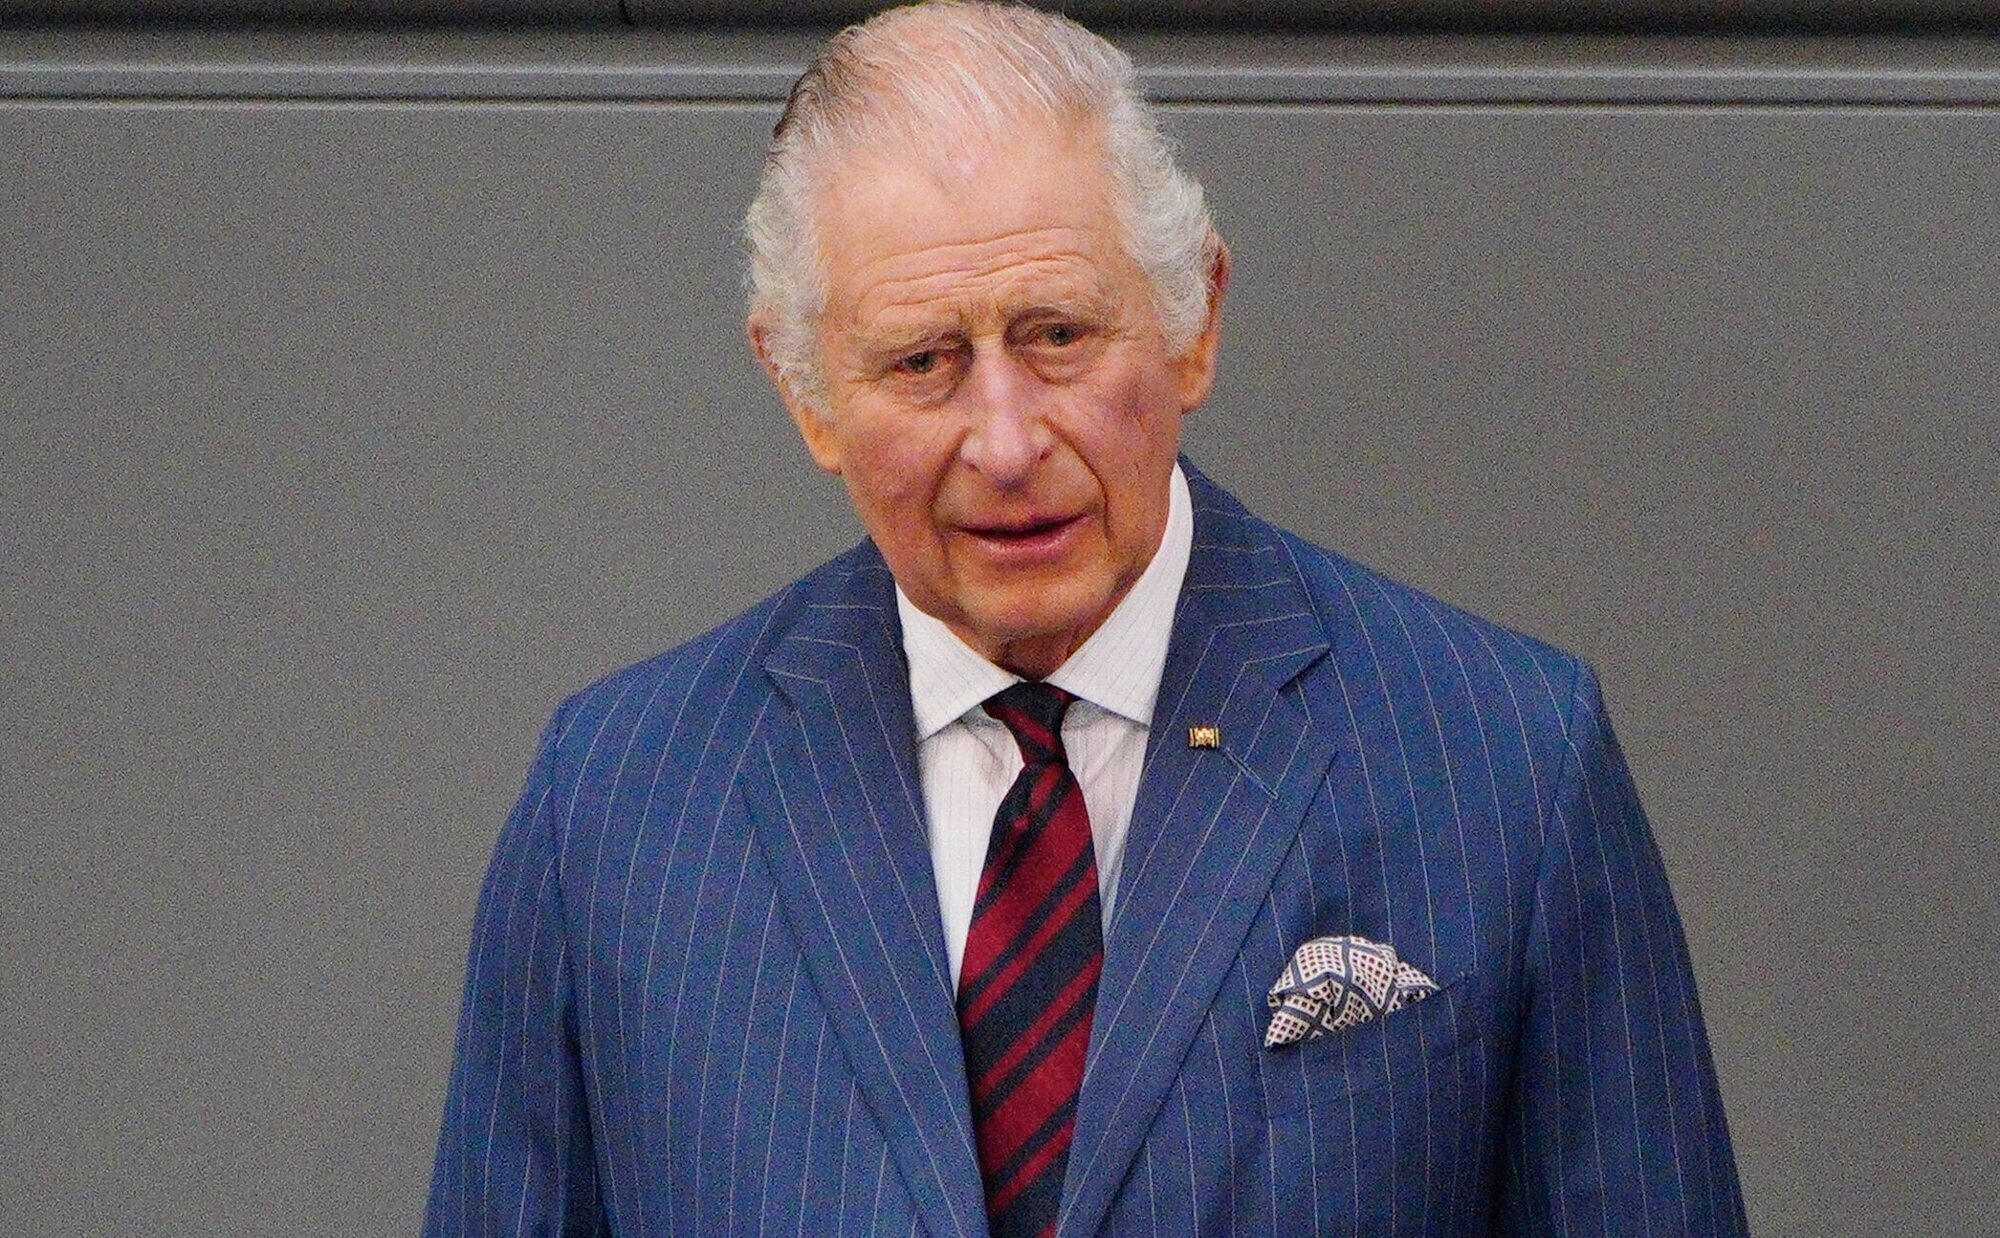 El Rey Carlos III se somete a un tratamiento pionero contra el cáncer